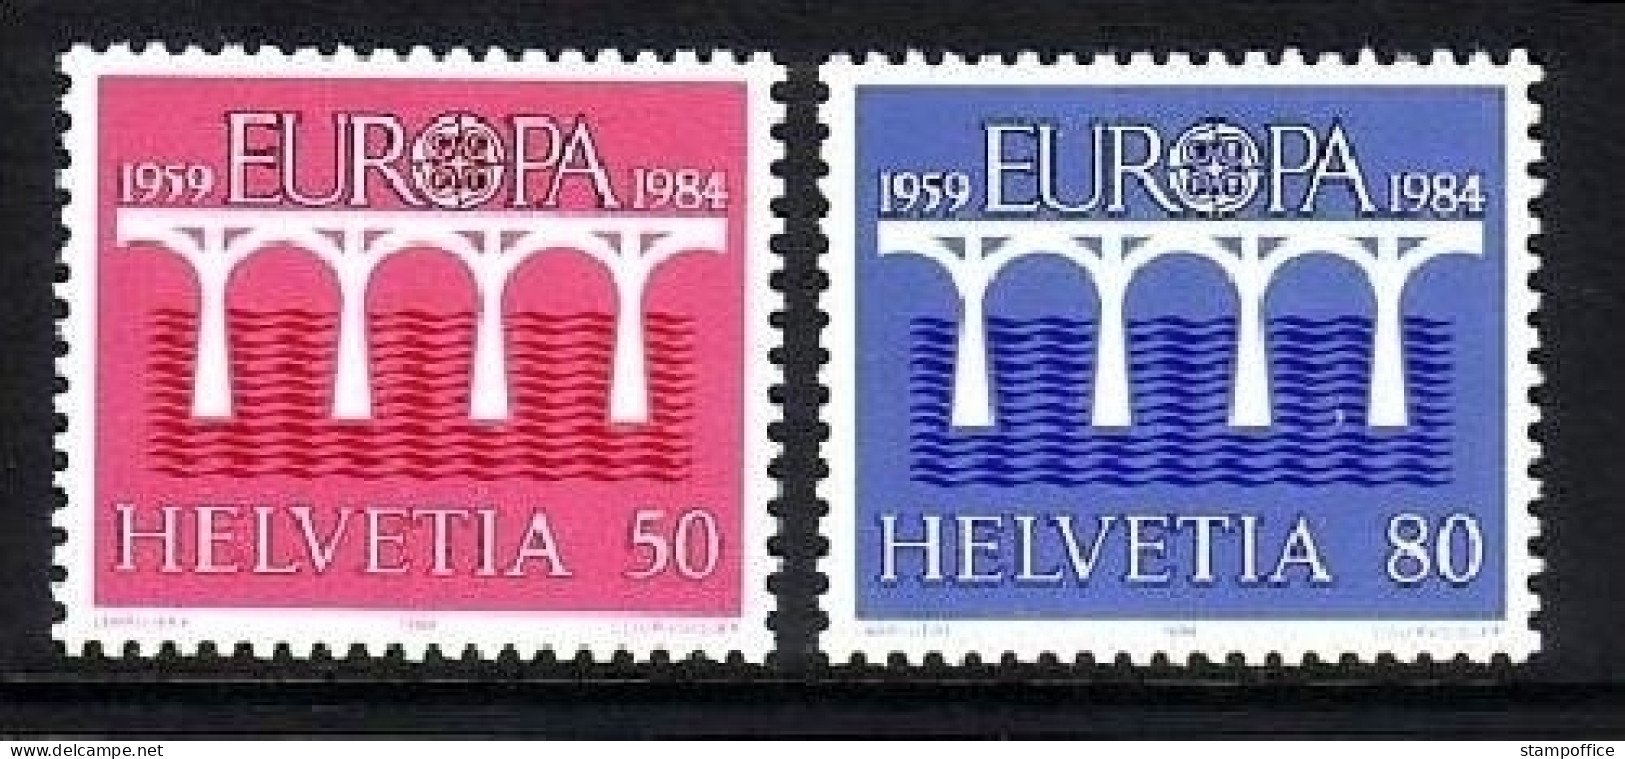 SCHWEIZ MI-NR. 1270-1271 POSTFRISCH(MINT) EUROPA 1984 BRÜCKE - 1984